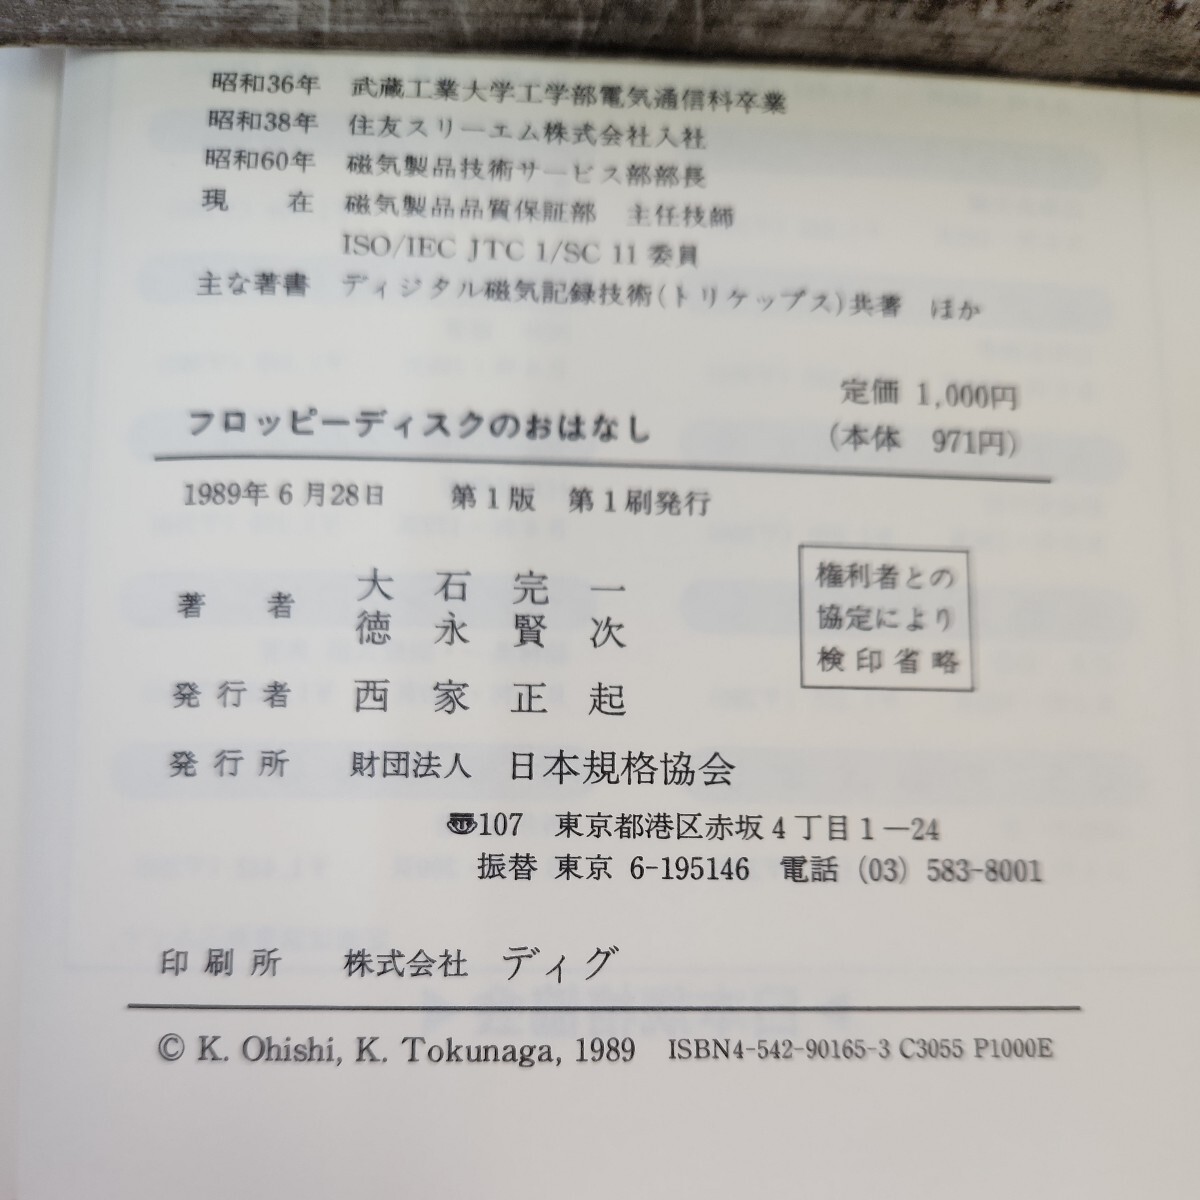 B56-037 フロッピーディスクのおはなし 大石 完一編 日本規格協会 書き込みあり。_画像3